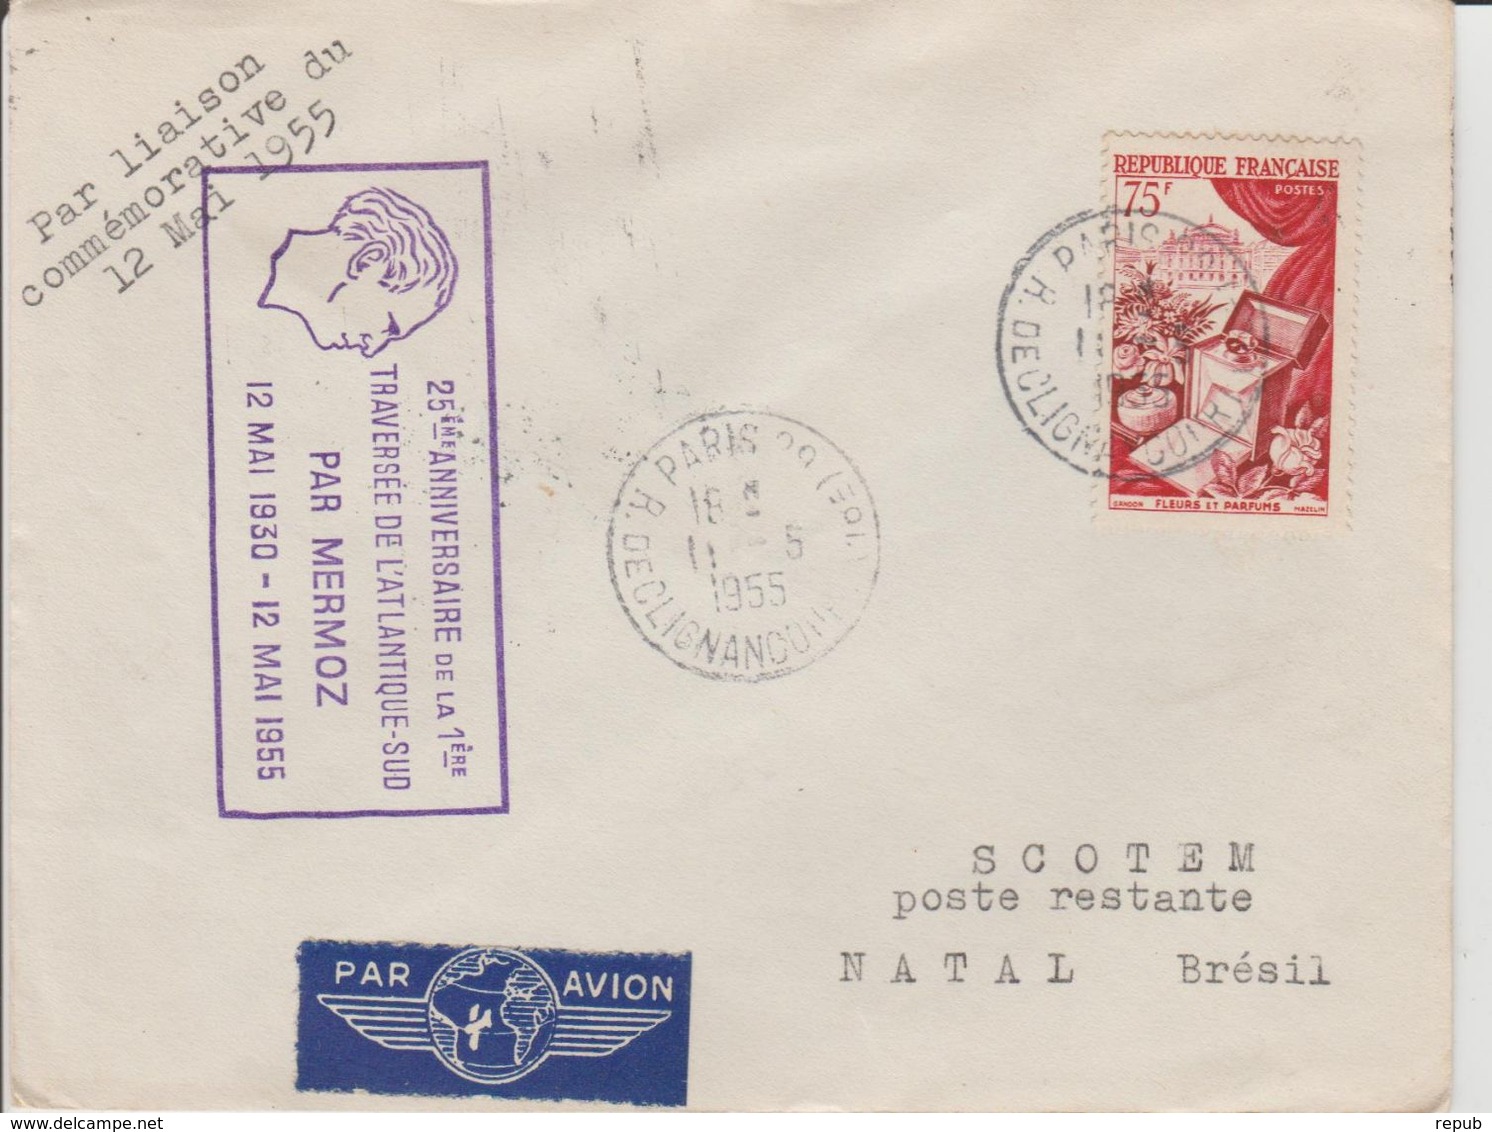 France 1955 25ème Anniversaire De La Traversée De L'atlantique Par Mermoz - First Flight Covers